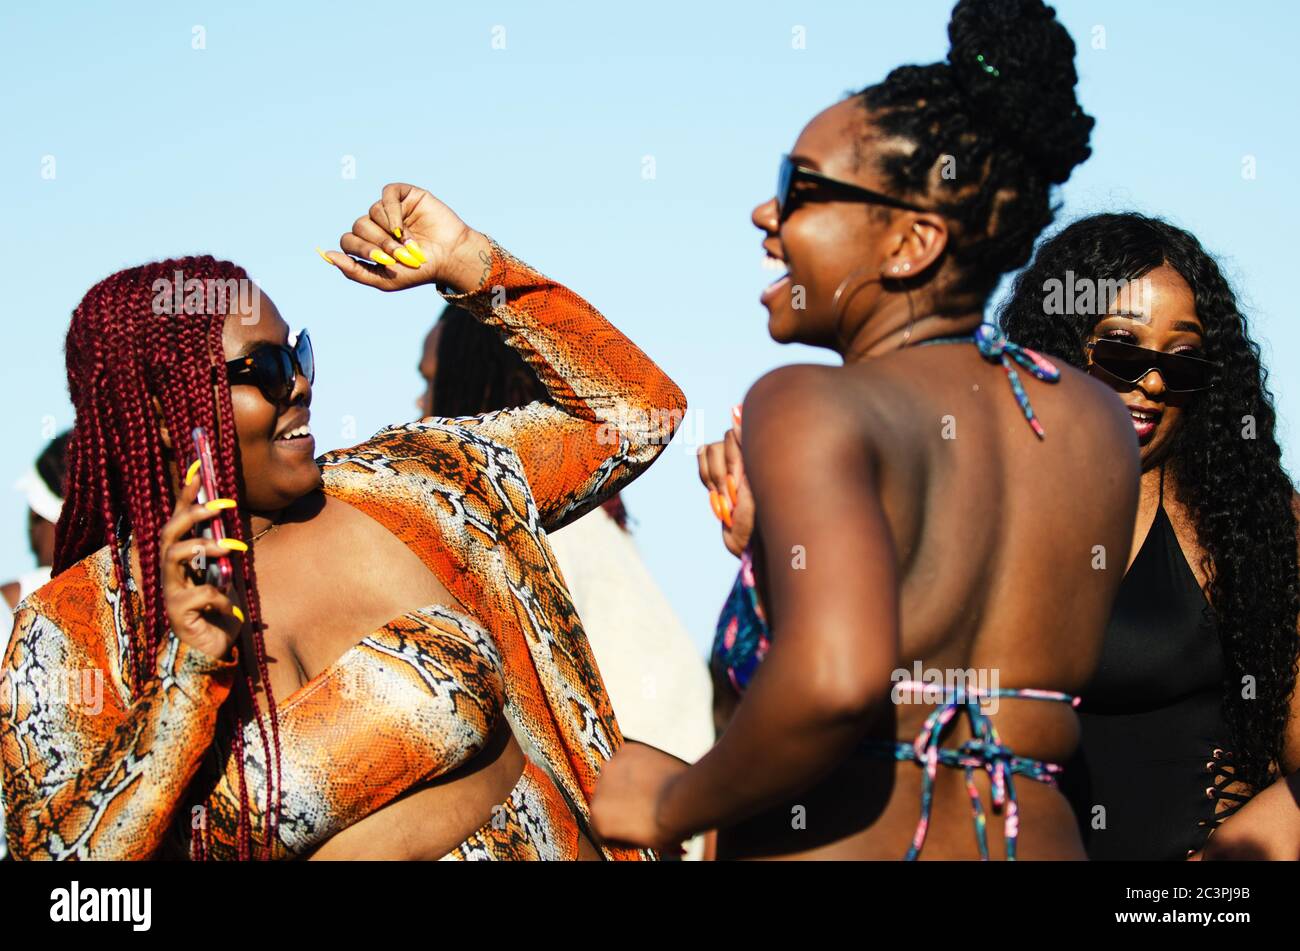 MIAMI - 16. MÄRZ 2019: Eine Gruppe junger Frauen tanzen für ihre Social-Media-Anhänger bei einem Treffen von Studenten feiern Frühlingsferien. Stockfoto